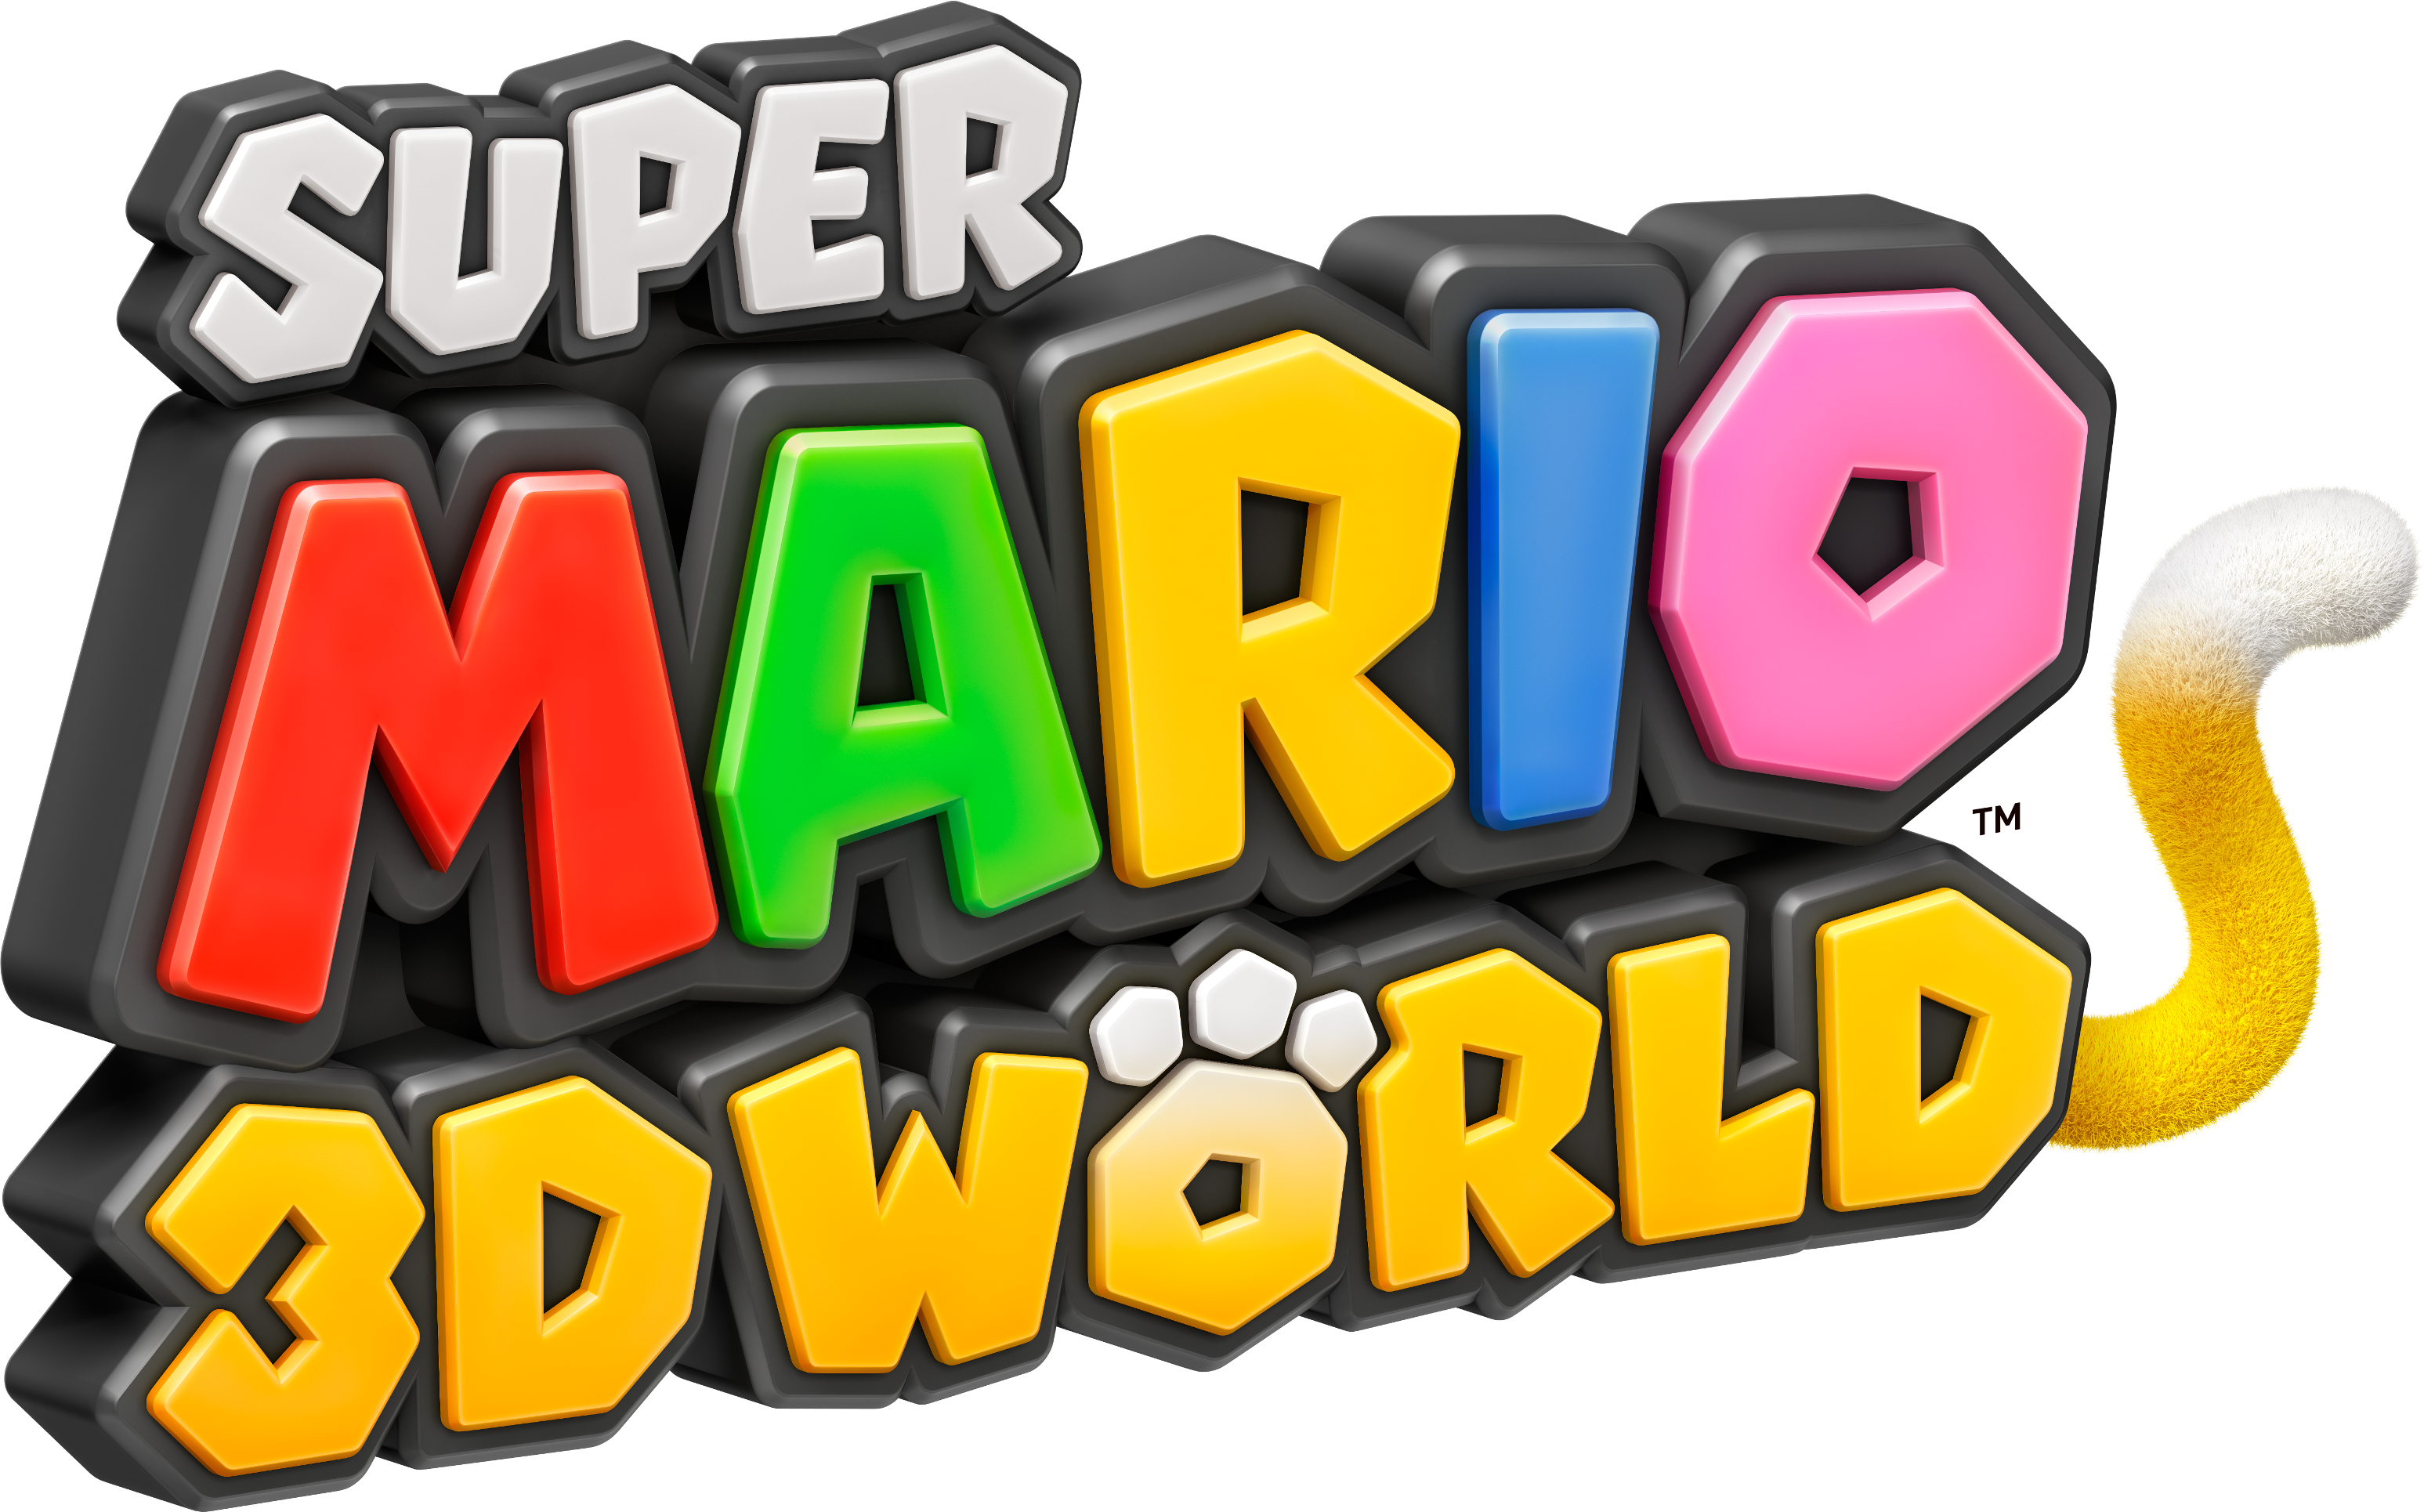 super mario 3d world cemu game save lost